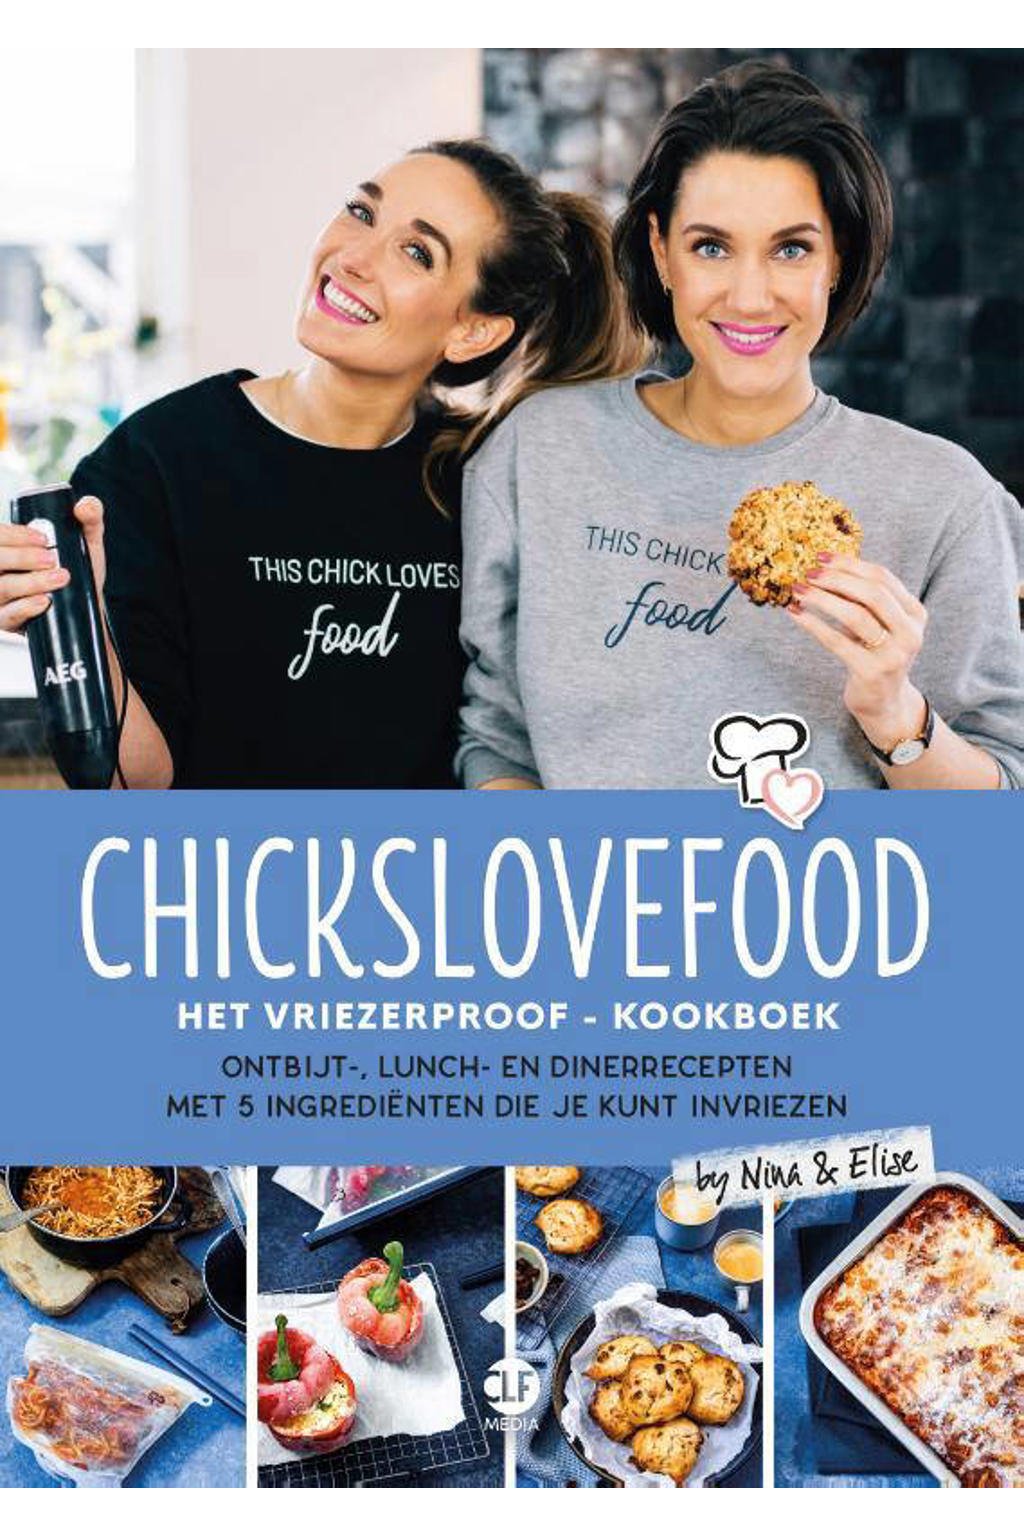 Chickslovefood: Chickslovefood: Het vriezerproof-kookboek - Elise Gruppen-Schouwerwou en Nina de Bruijn